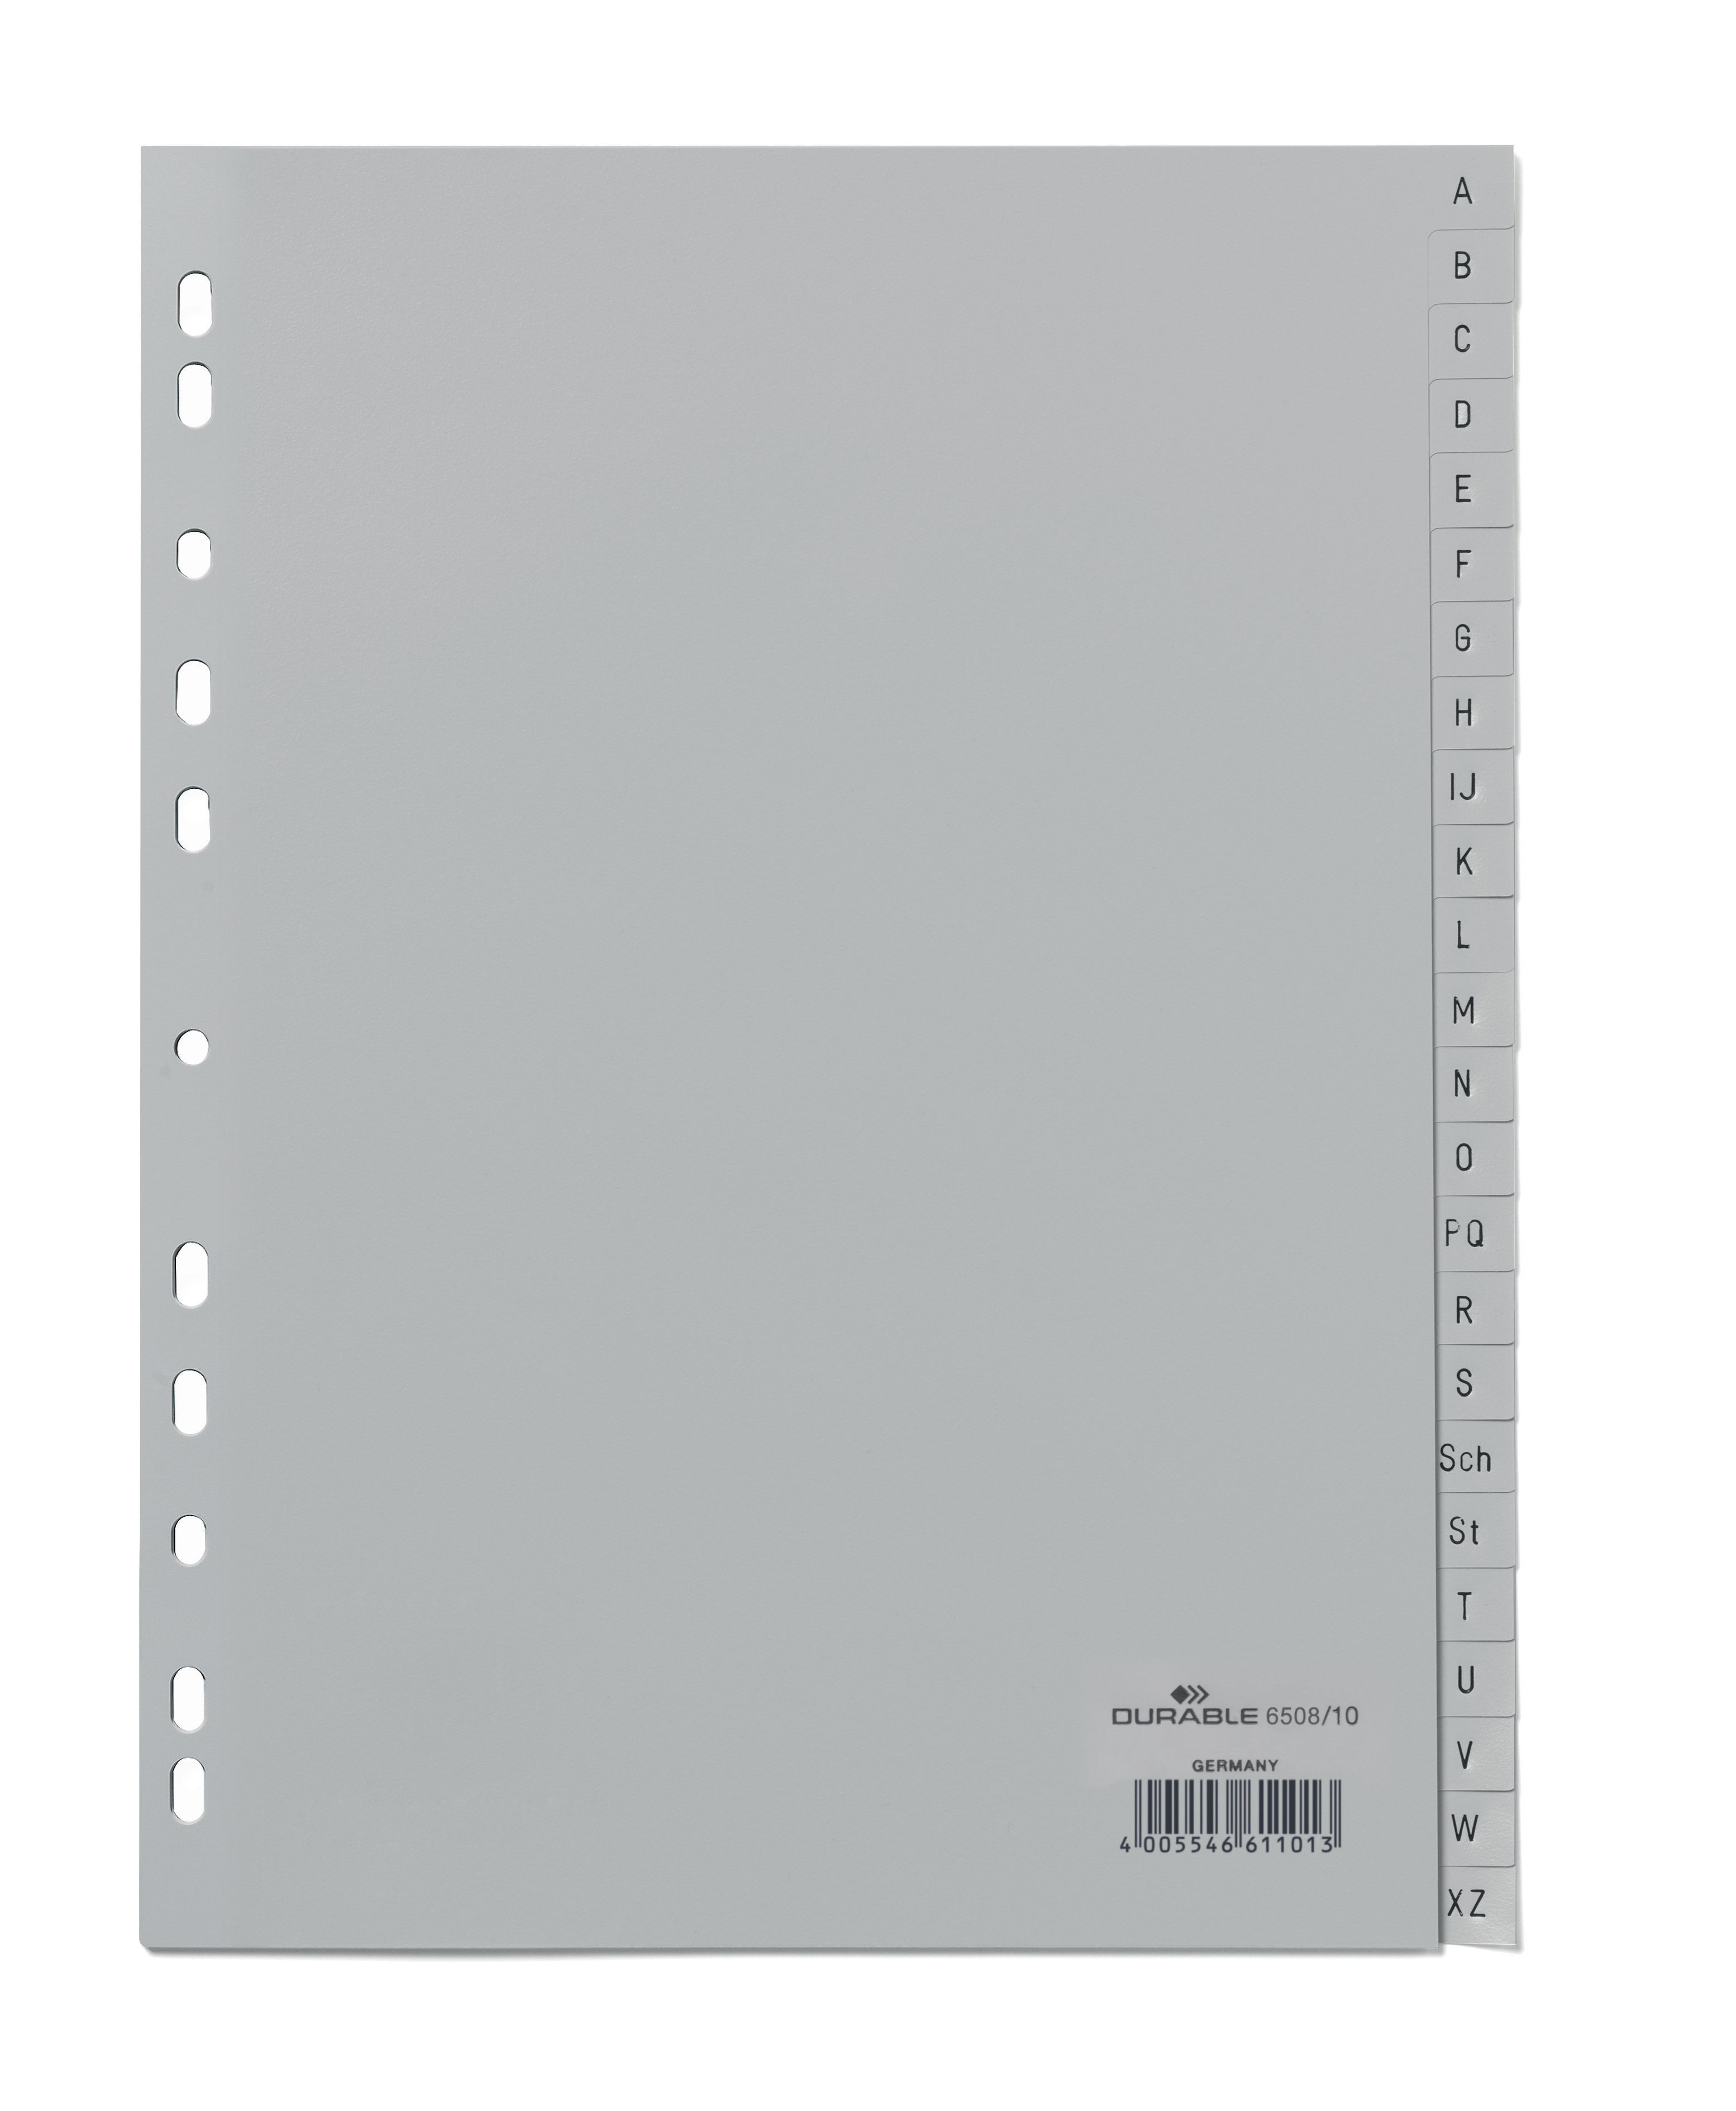 DURABLE Répertoires gris A4 6508/10 A-Z